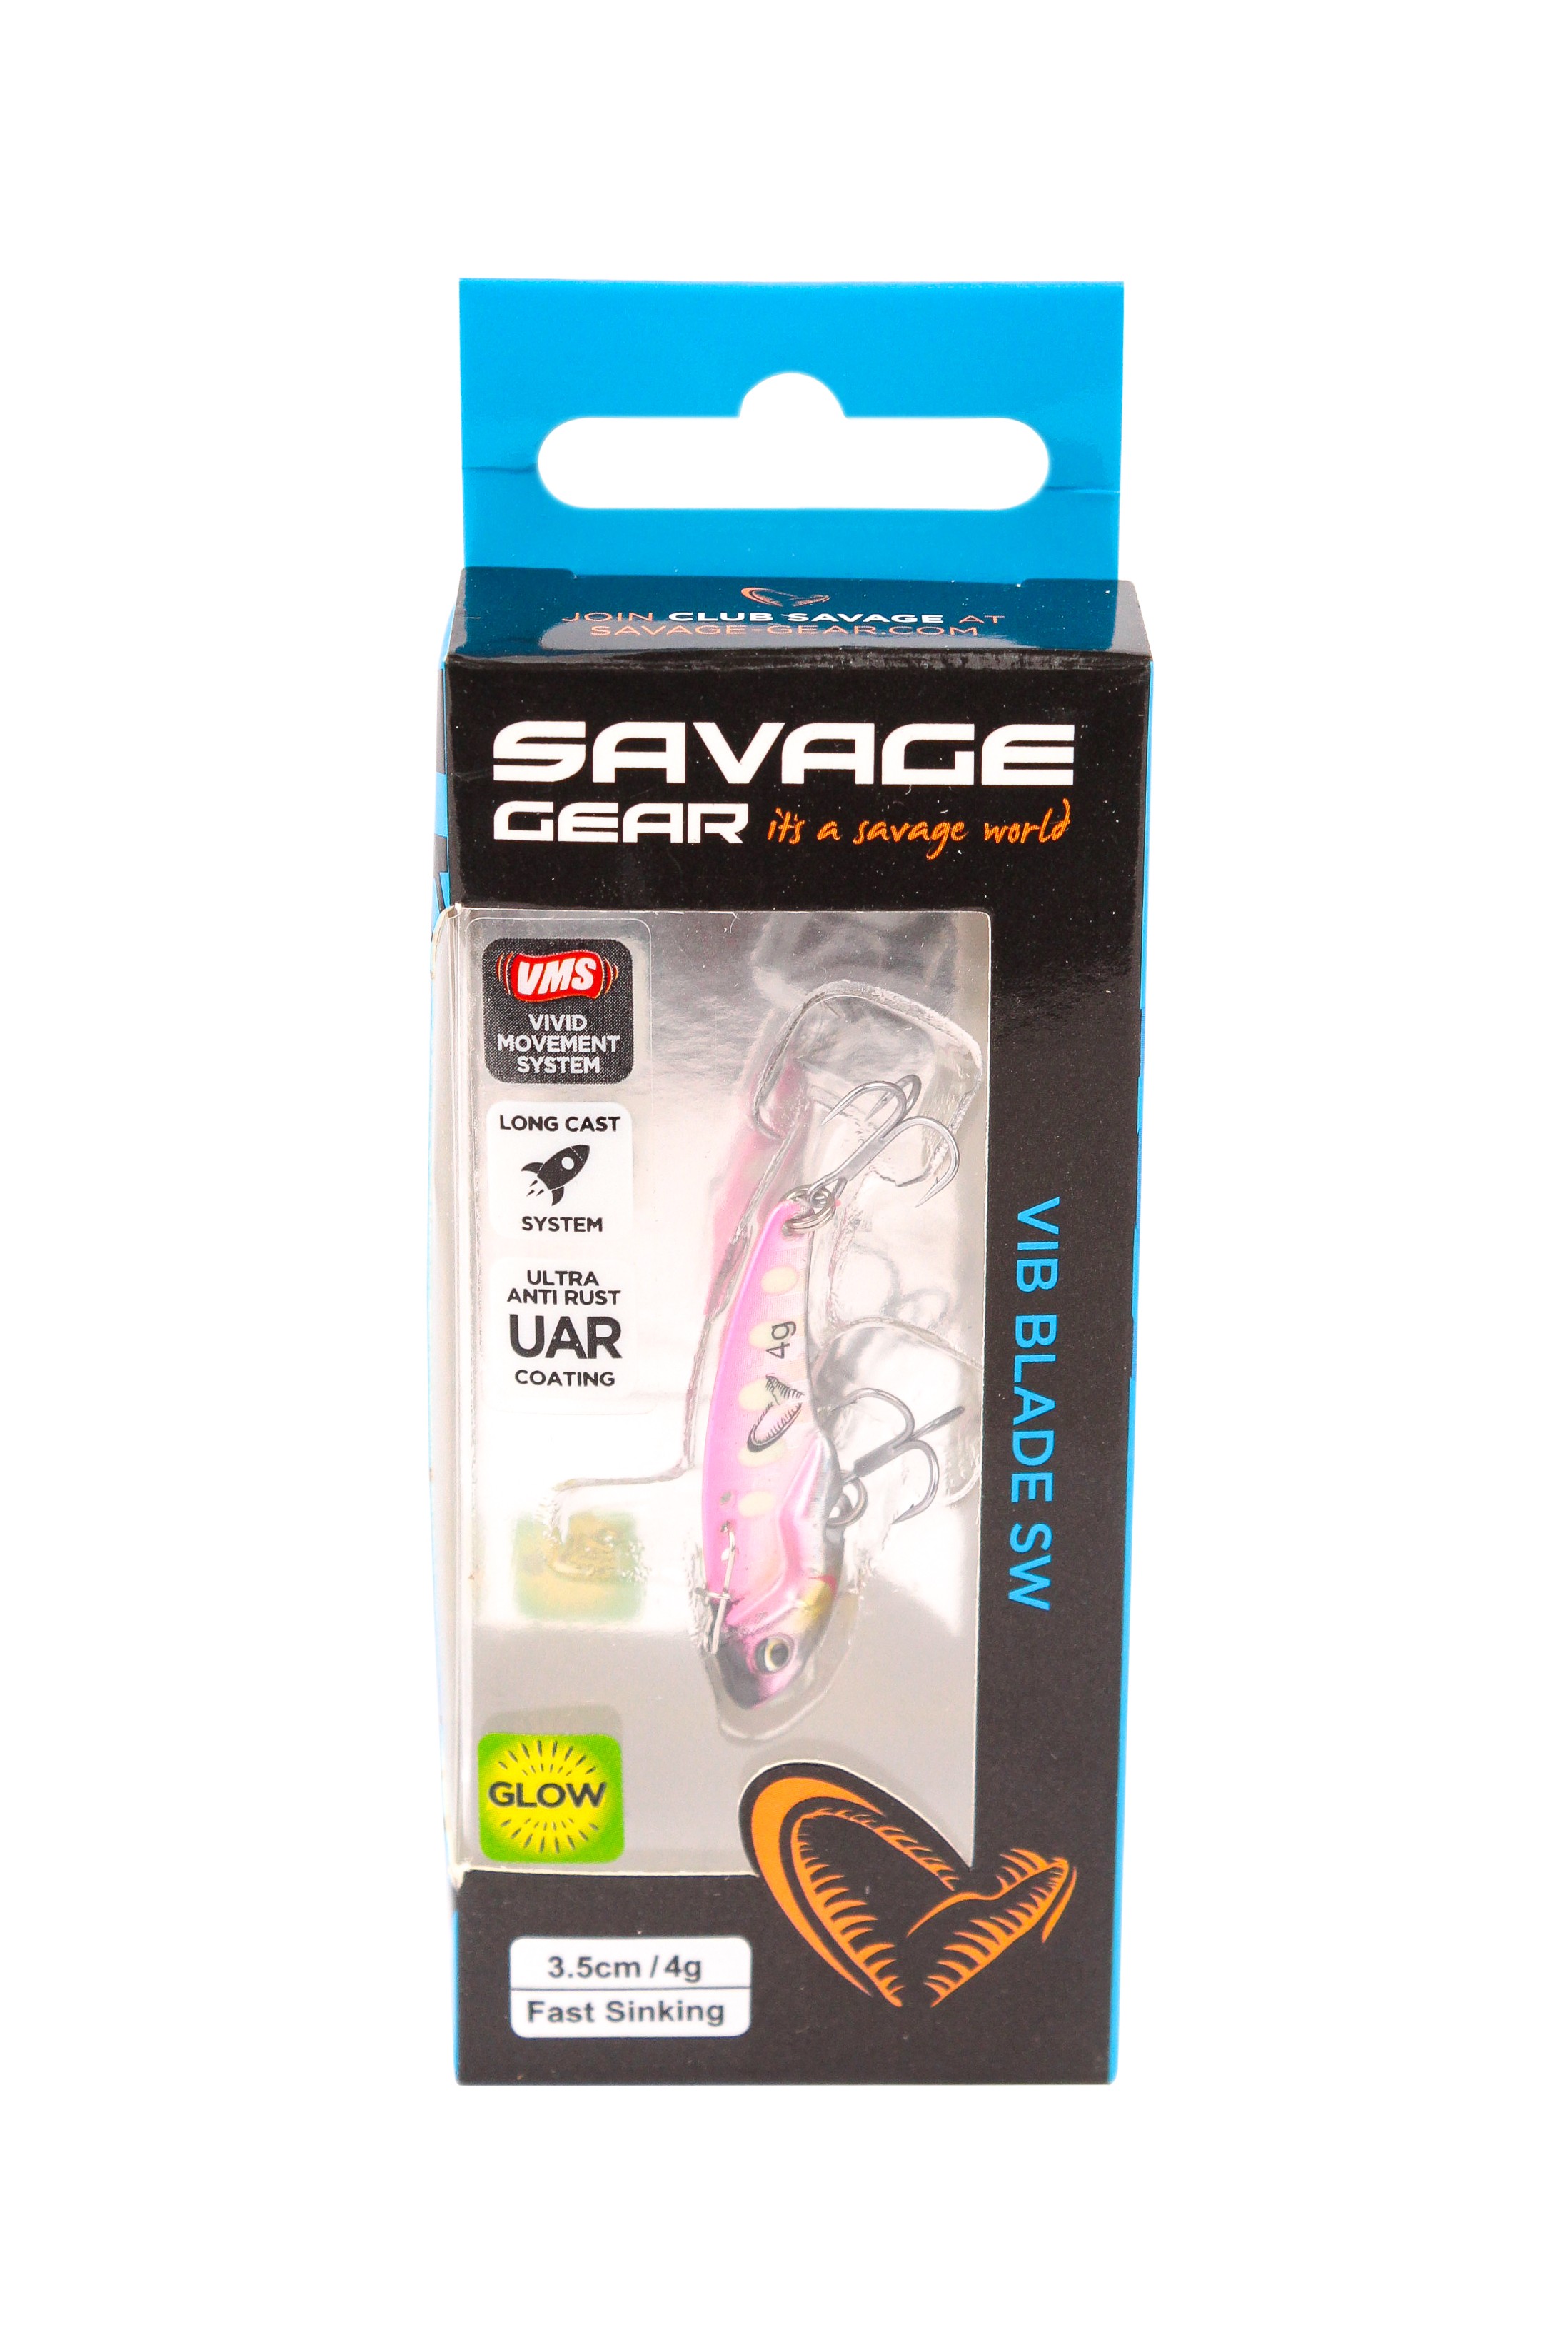 Блесна Savage Gear Vib blade SW 3,5см 4гр fast sinking pink glow dot - фото 1